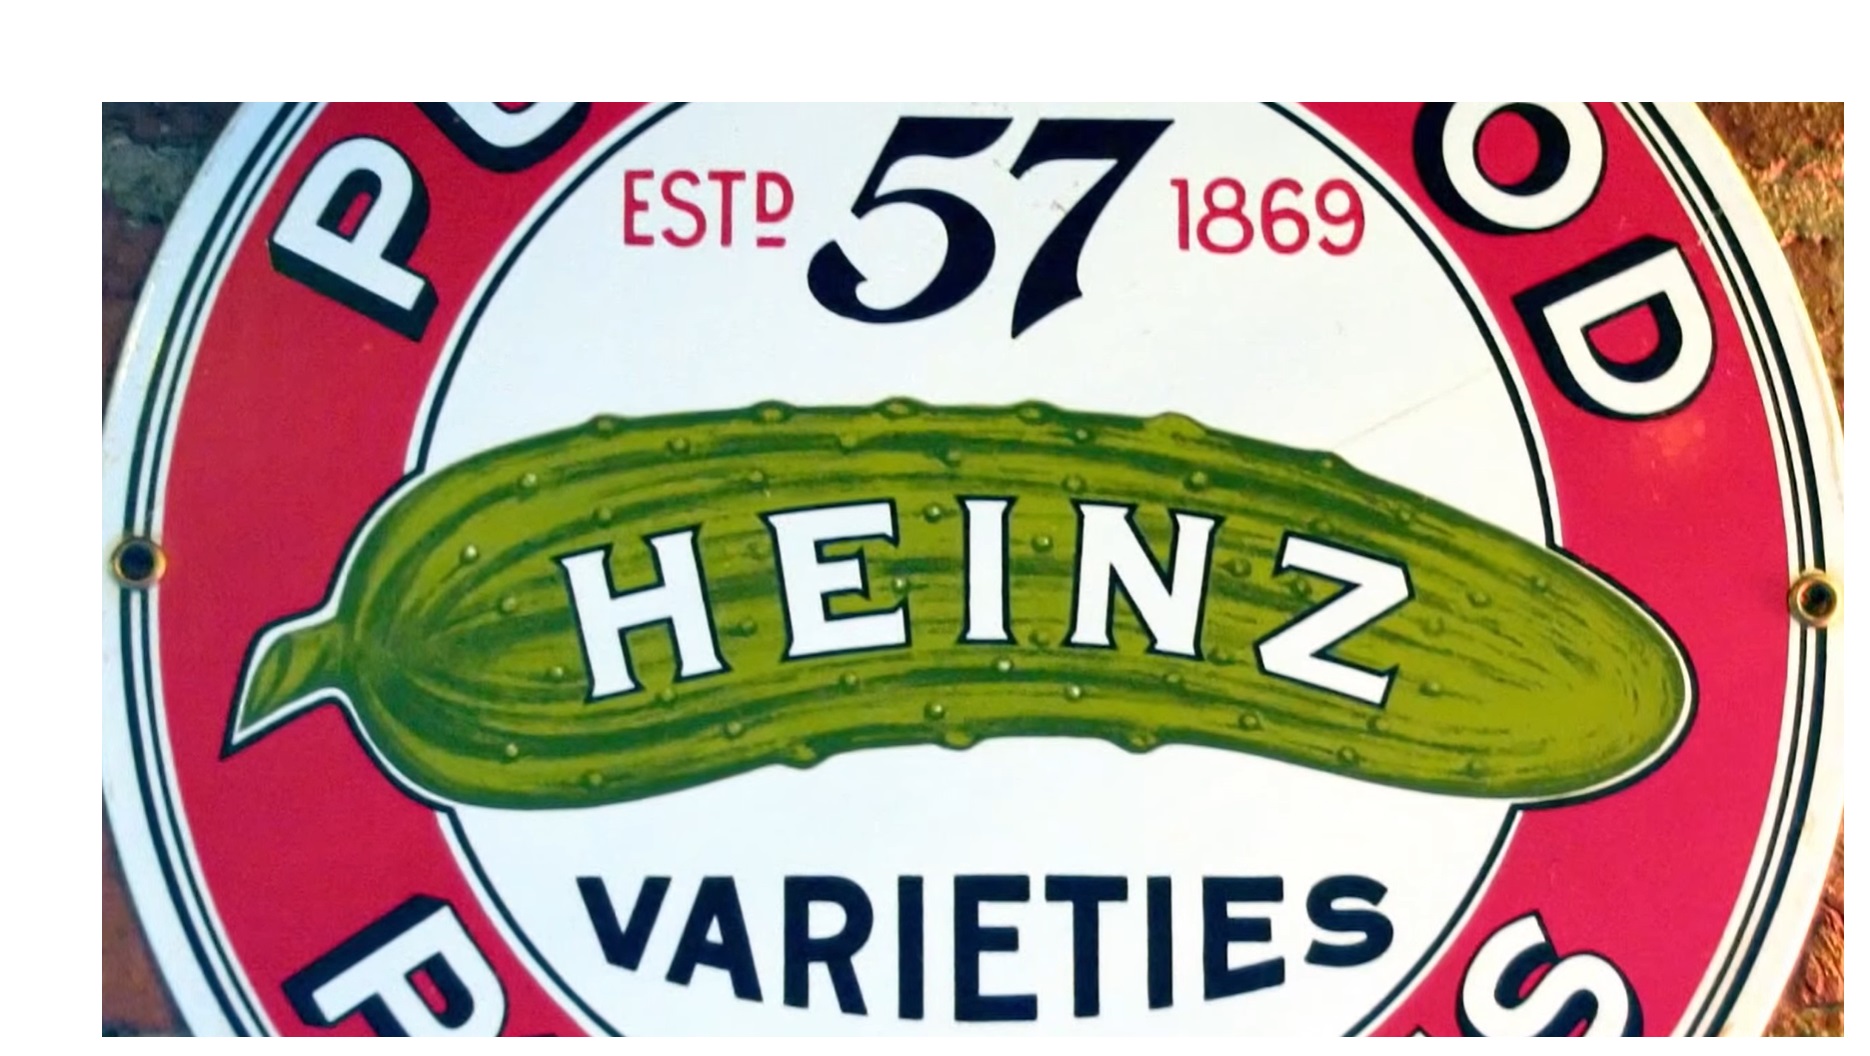 heinz, 57, varieties, publicis, starcom, programapublicidad